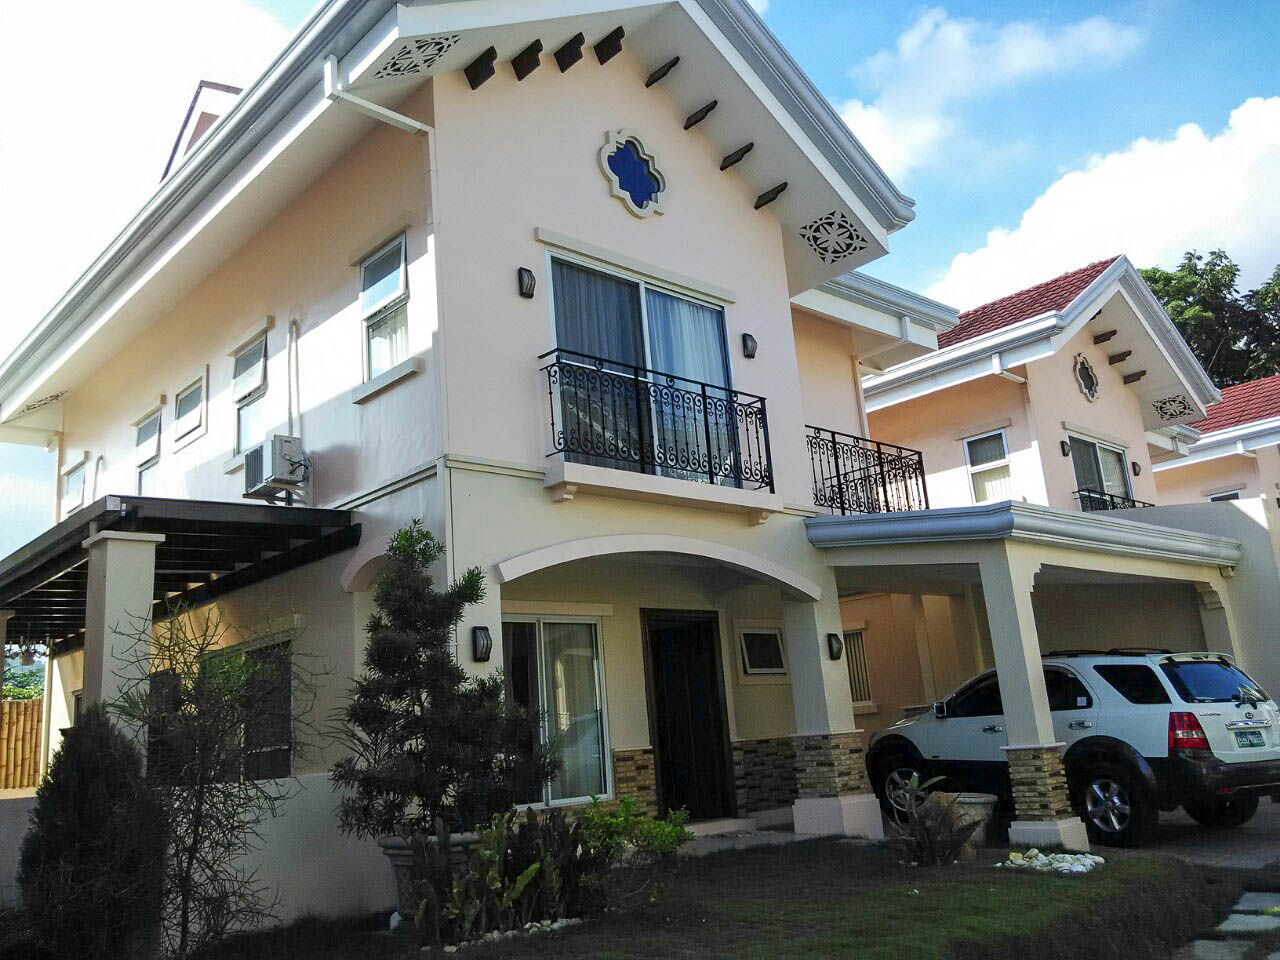 RC194 3 Bedroom House for Rent in Cebu City Cebu Grand Realty (19)